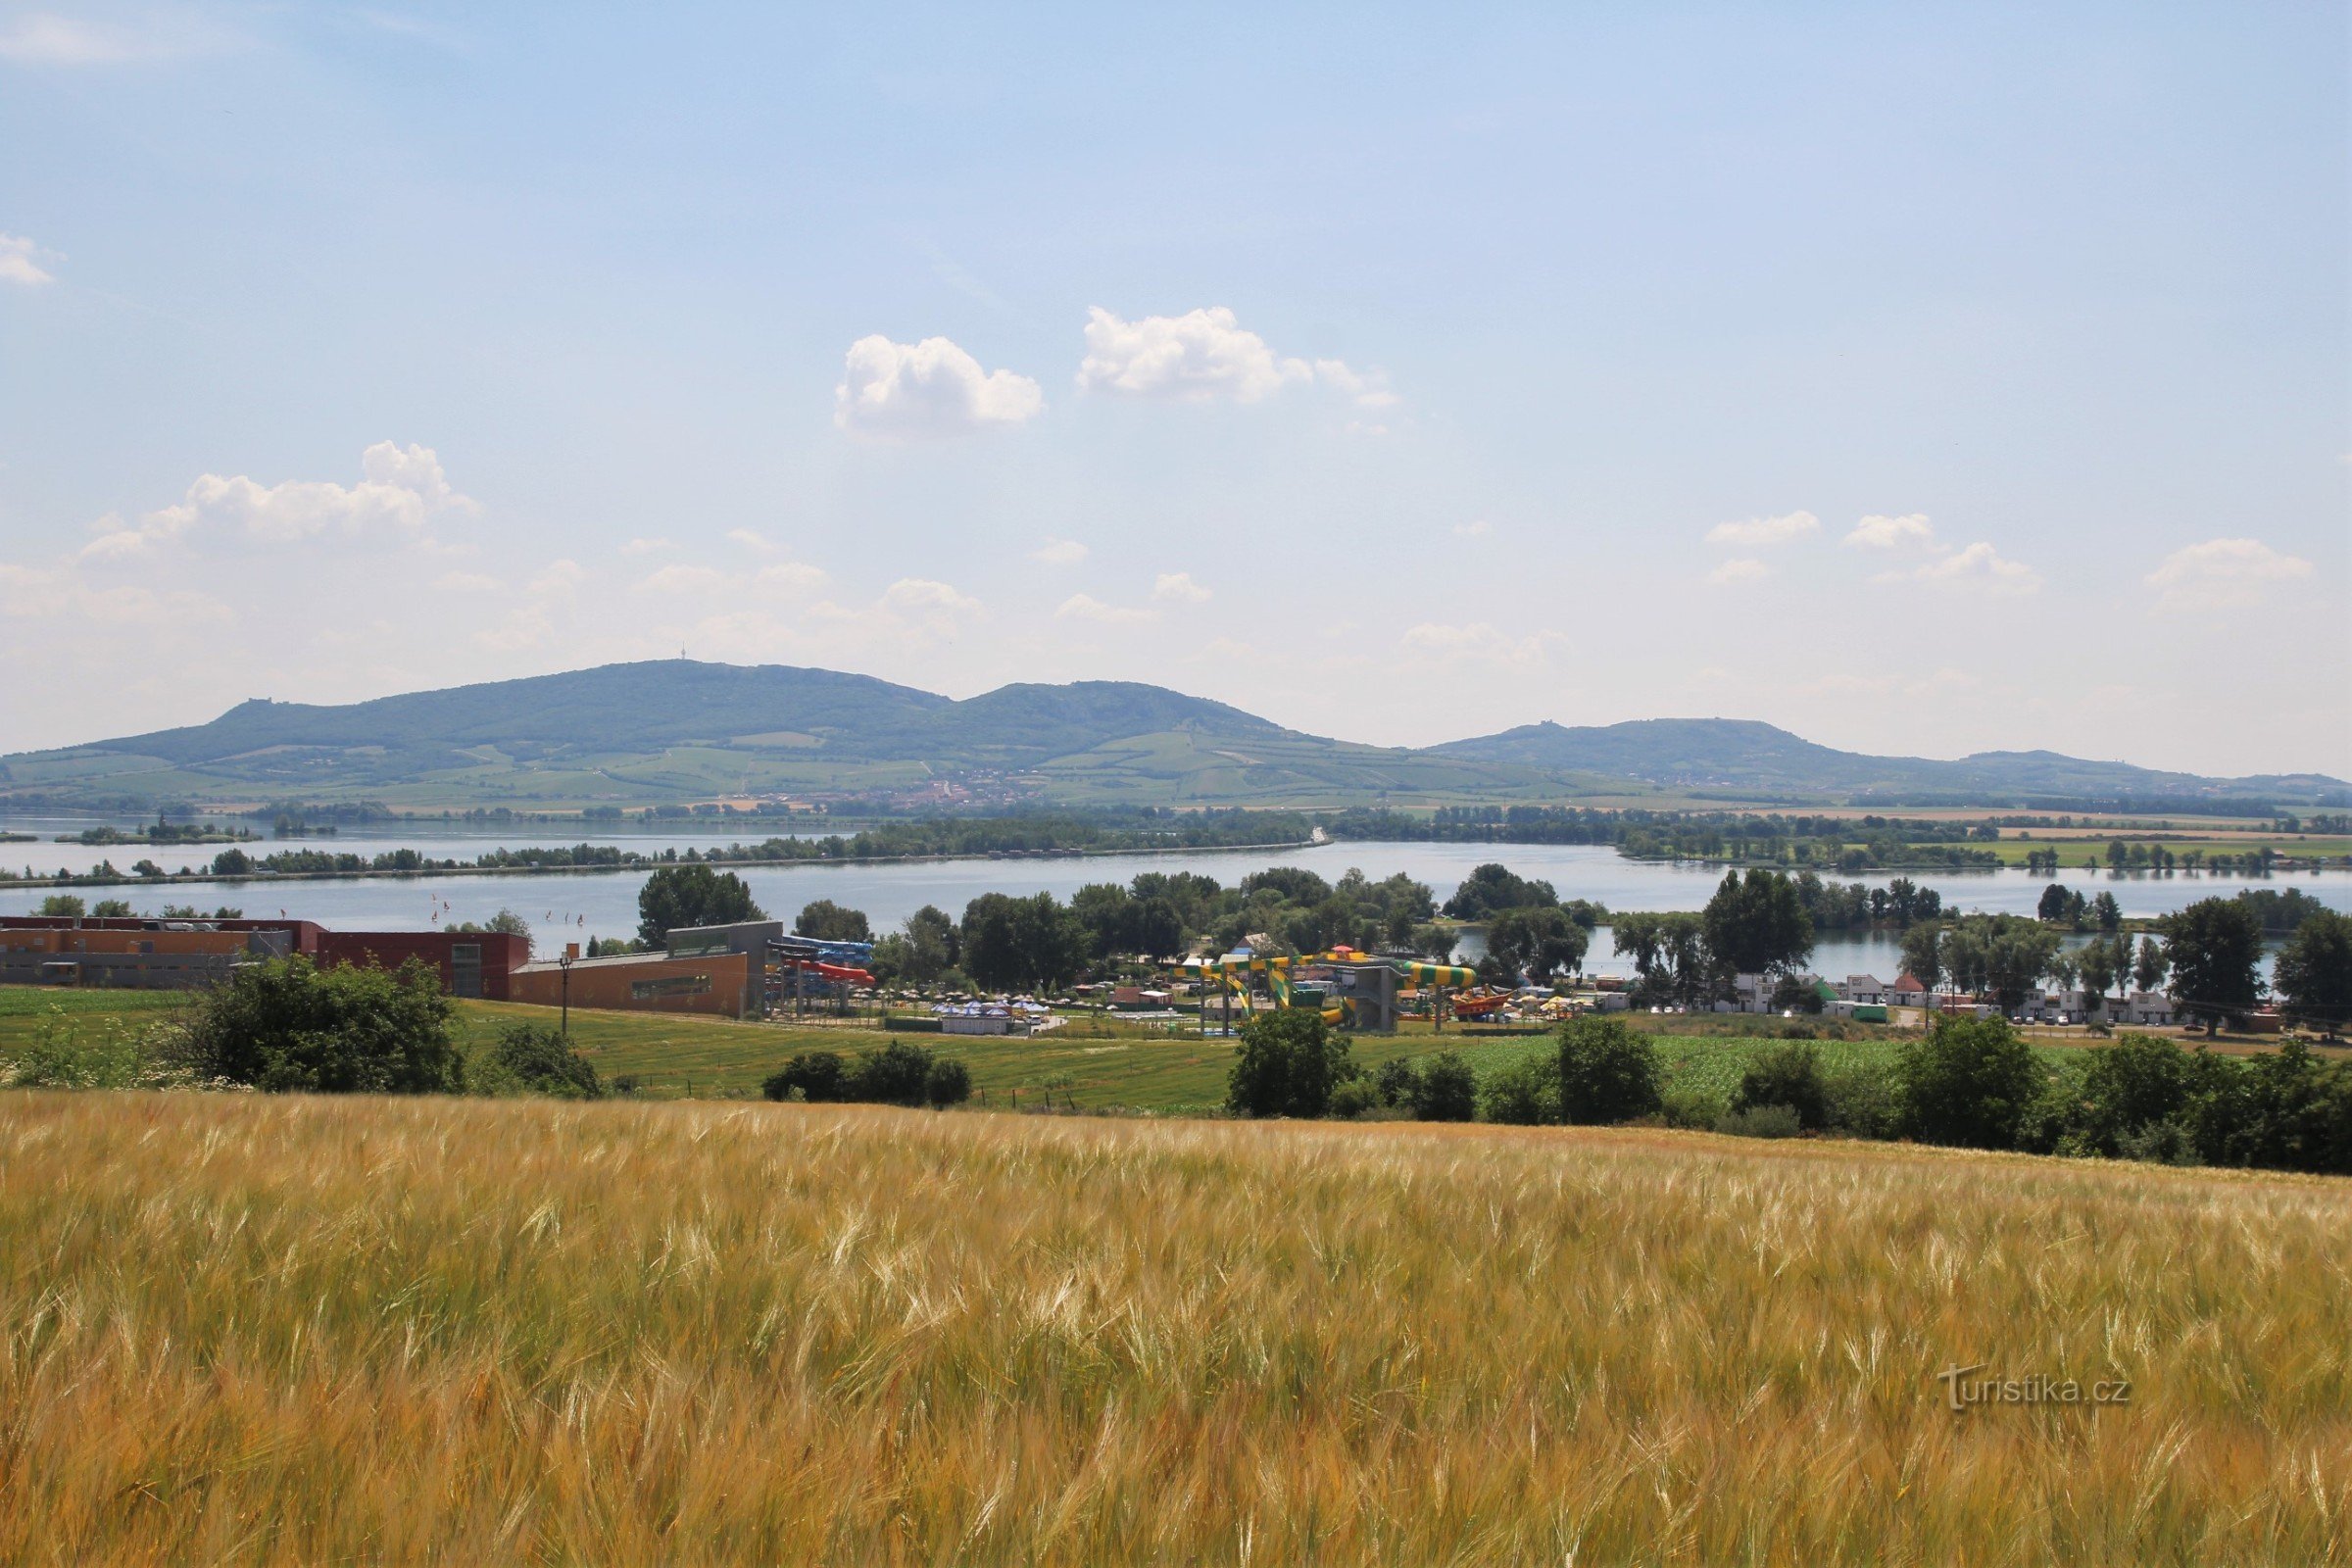 Se continuă de-a lungul drumului special construit în jurul Aqualand Moravia, cu panorama Pálava la orizont